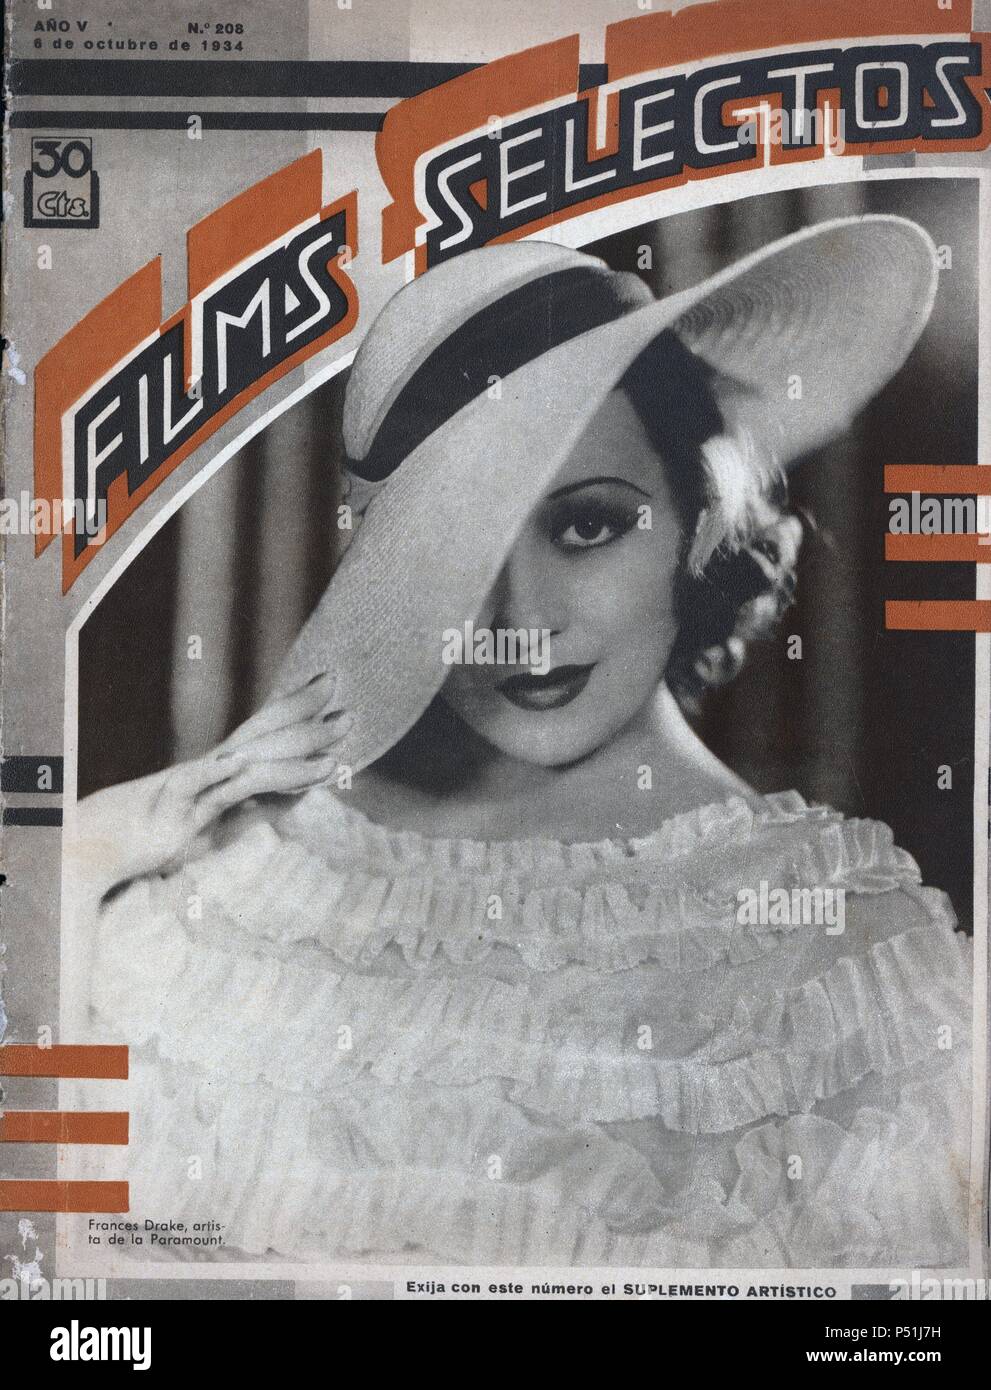 Revista de cine film selectos, número 208, Barcellona, 6 octubre 1934. Fotografía en portada de Frances Drake (1912-2000), actriz americana de la Paramount. Foto Stock